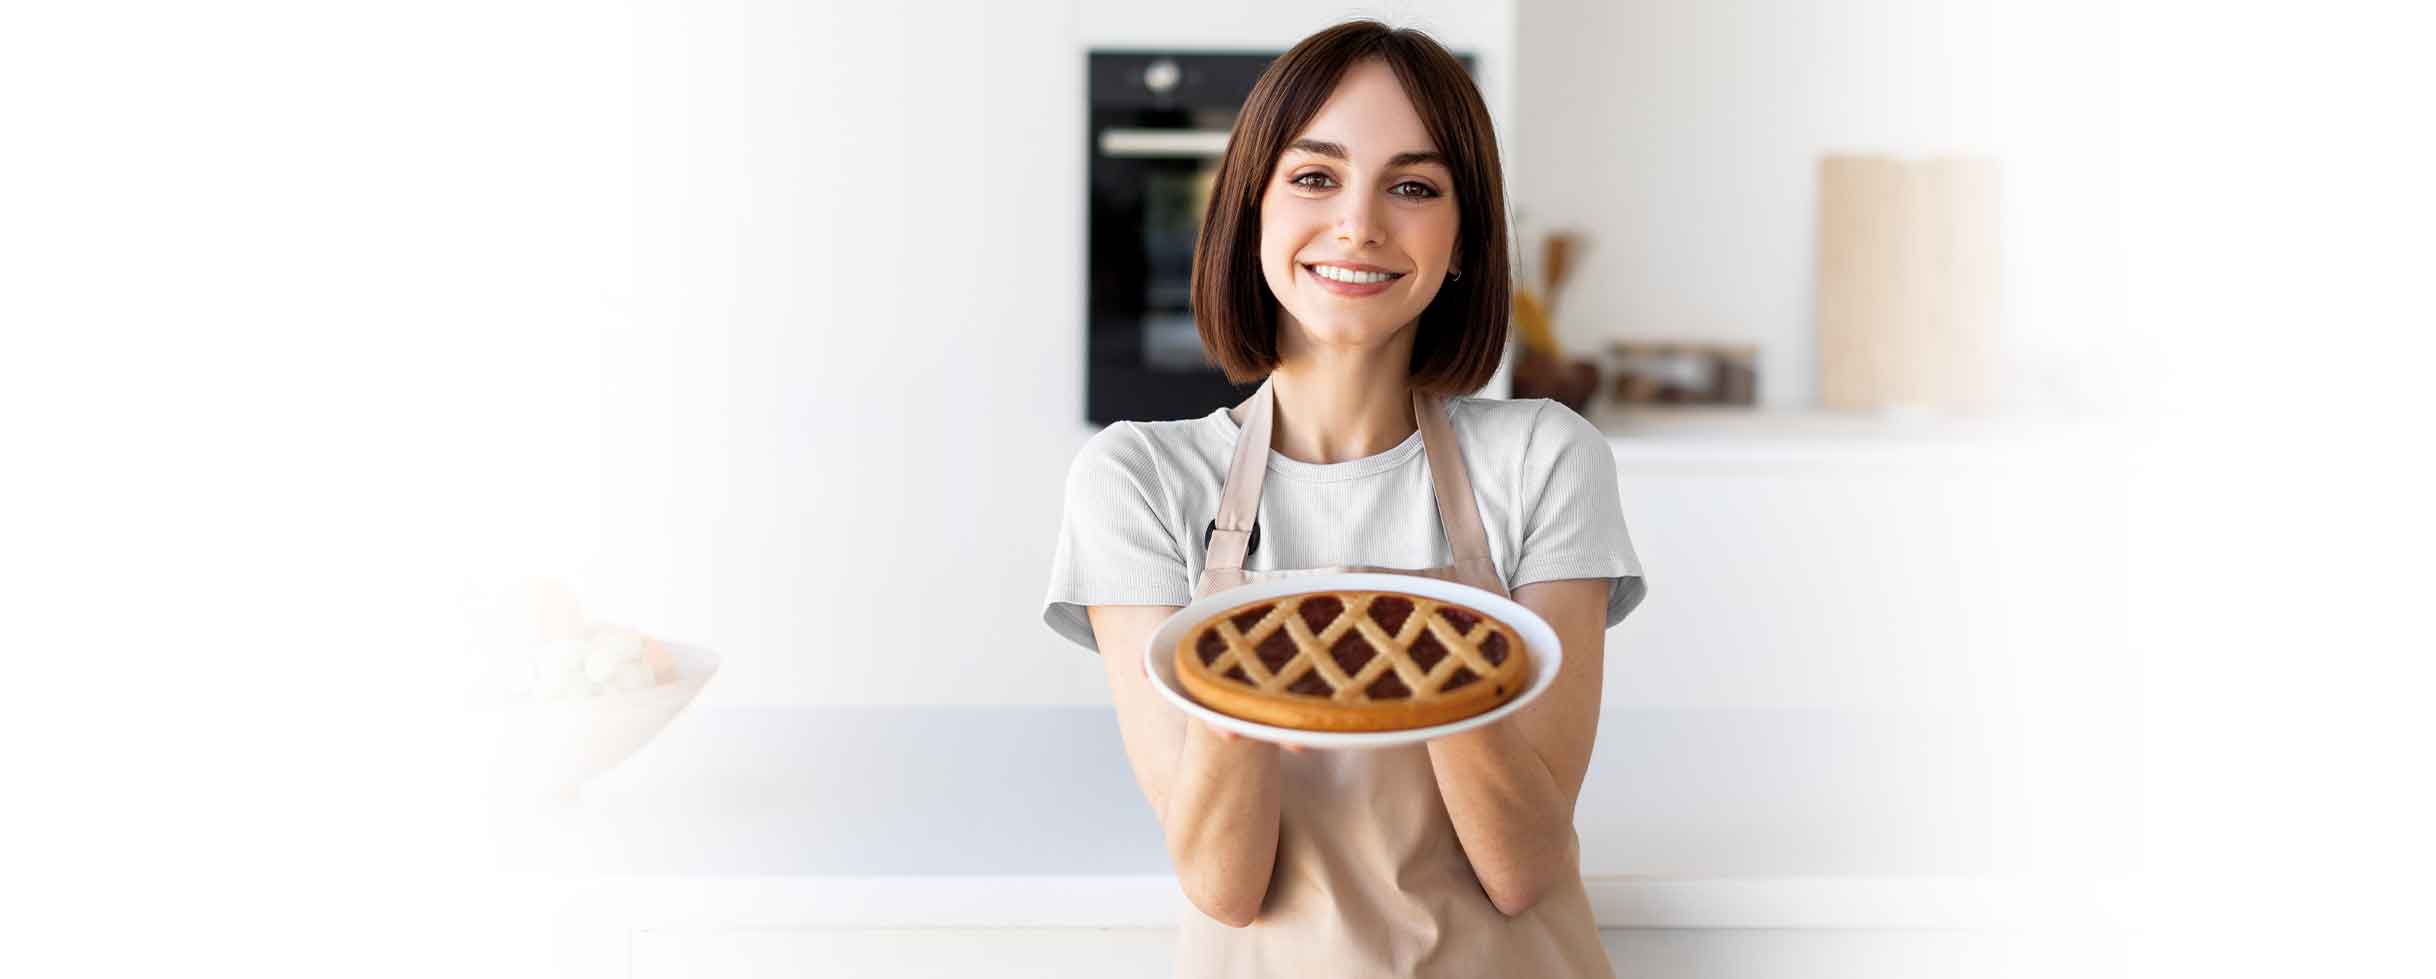 pastry chef del curso de repostería online